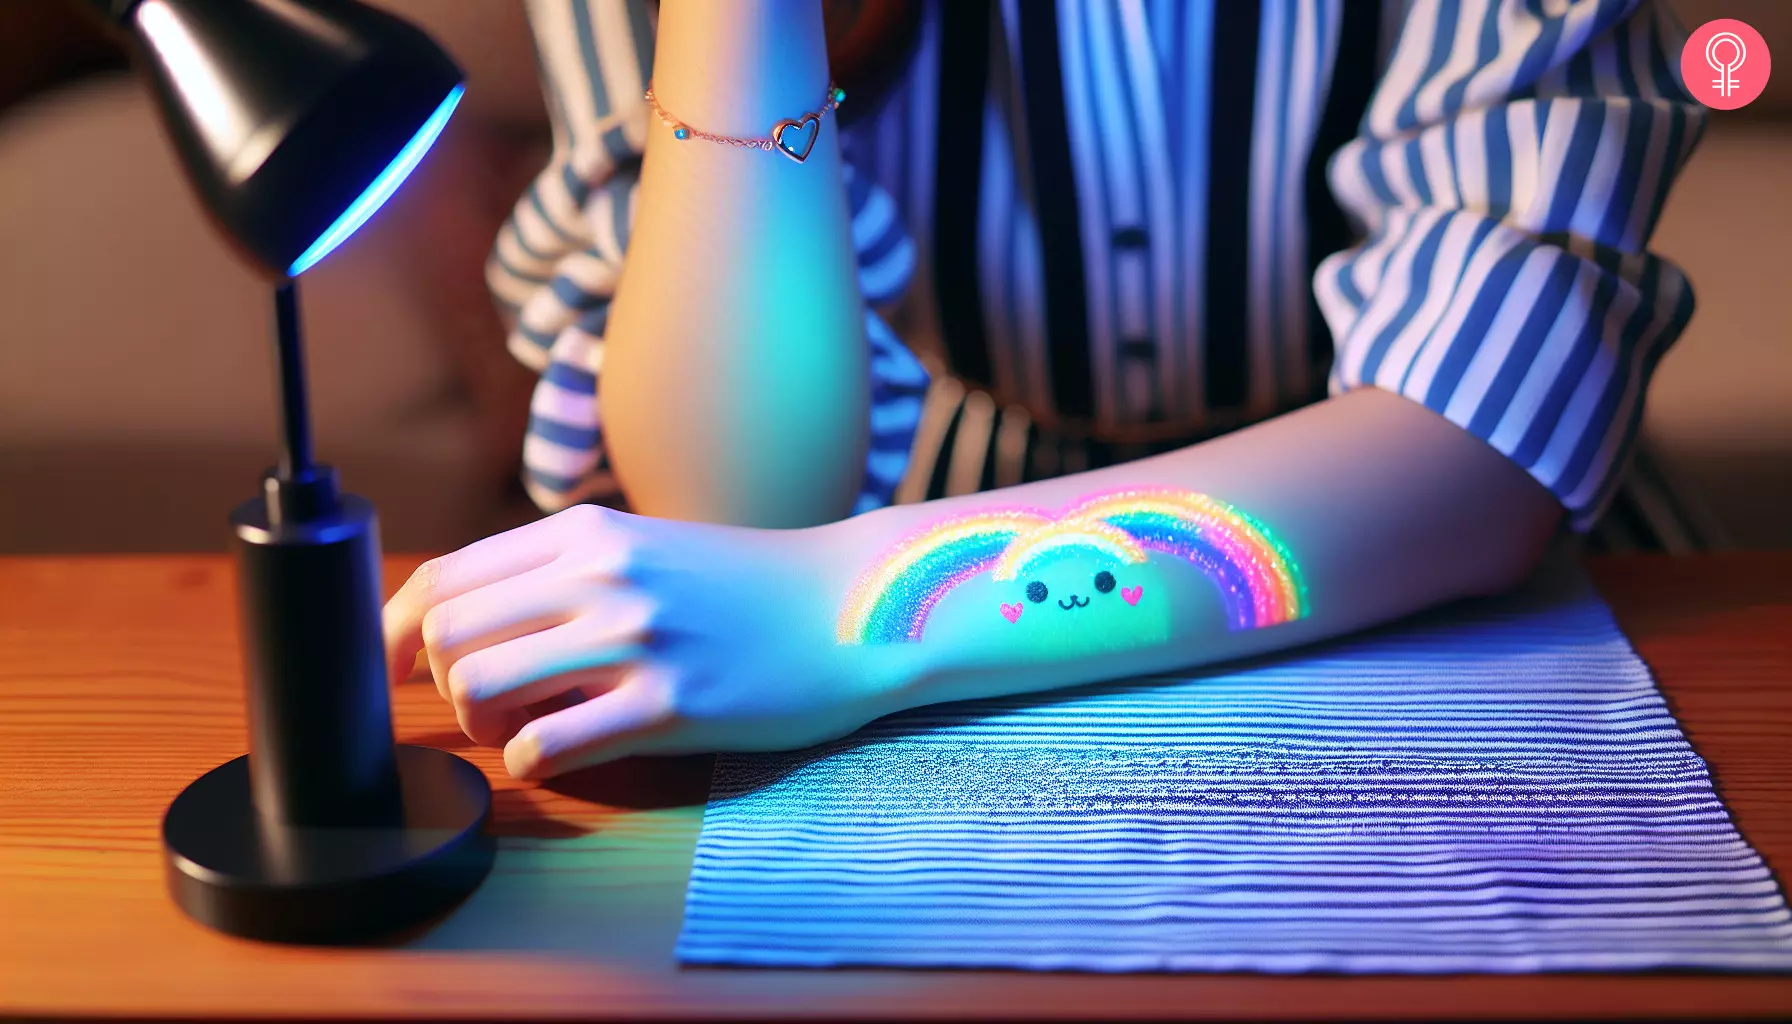 A cute rainbow UV tattoo on the forearm of a woman